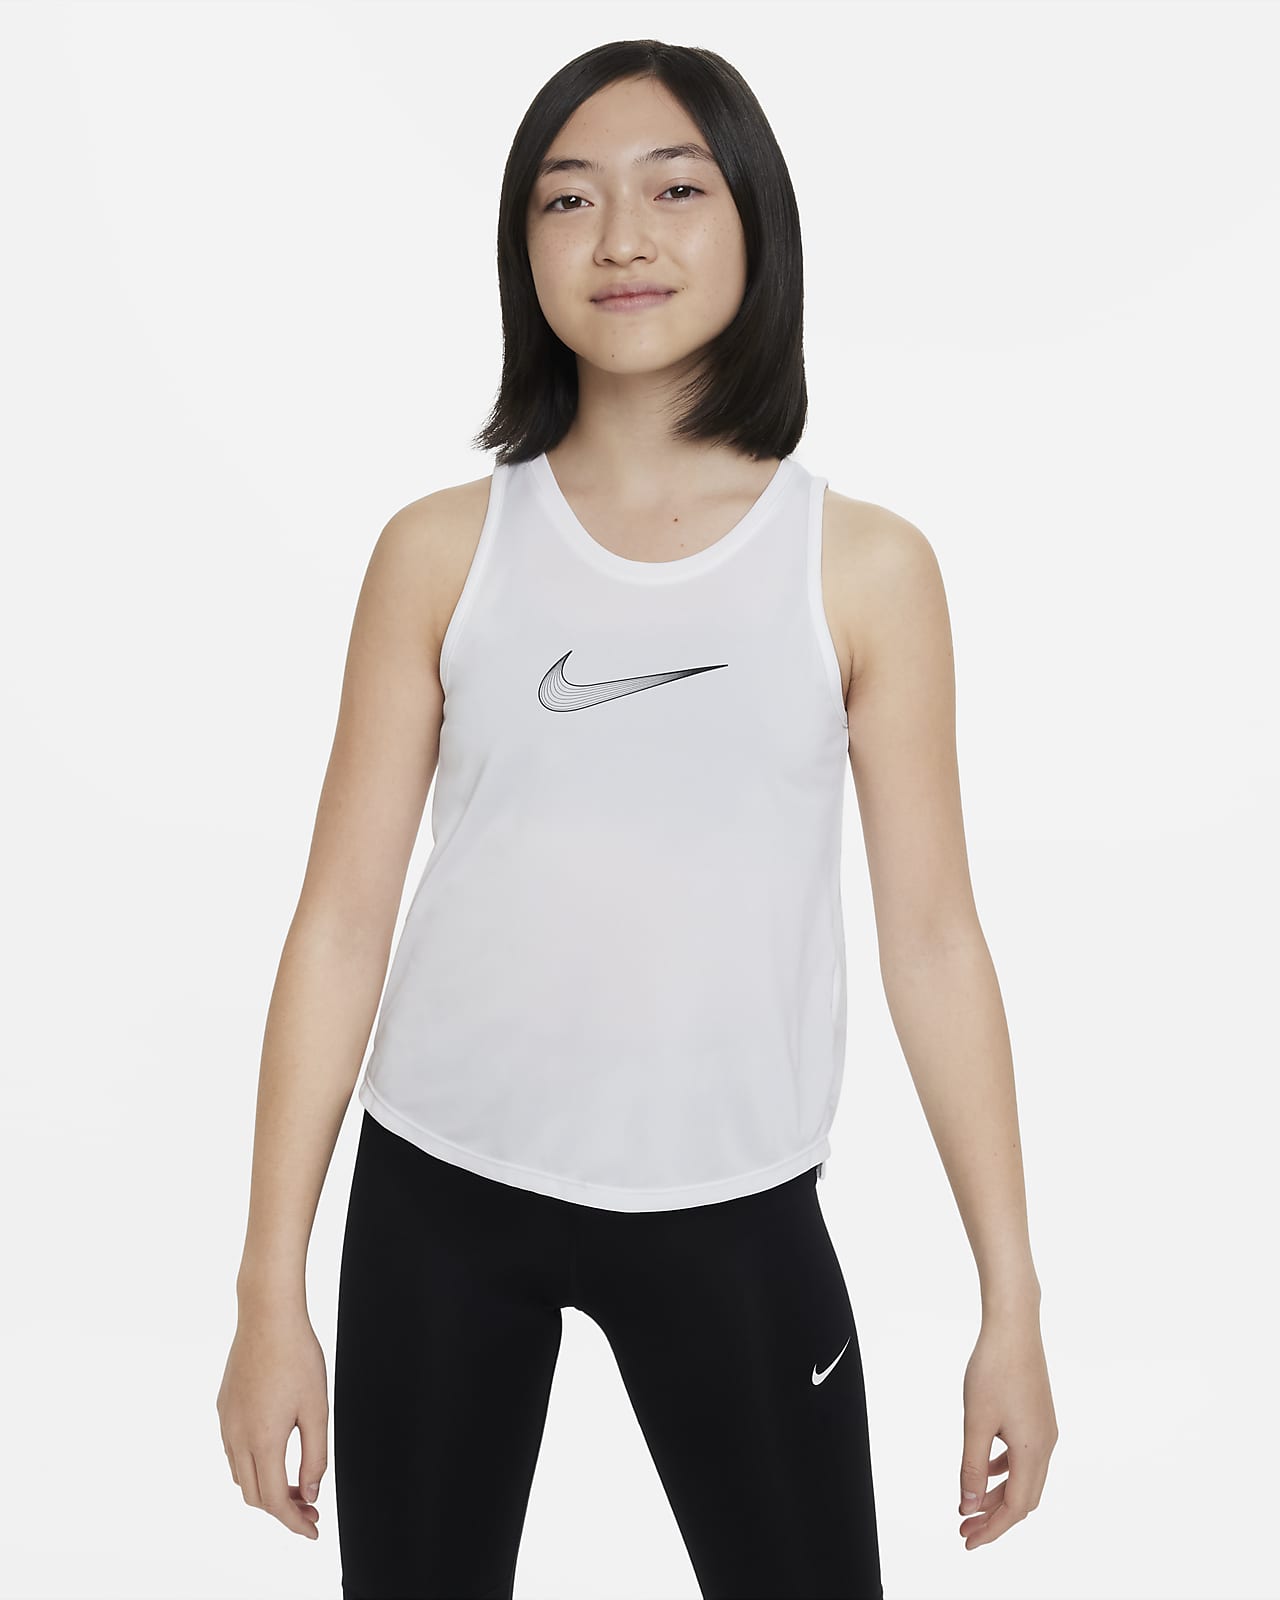 Tréninkové tílko Dri-FIT Nike One pro větší děti (dívky)